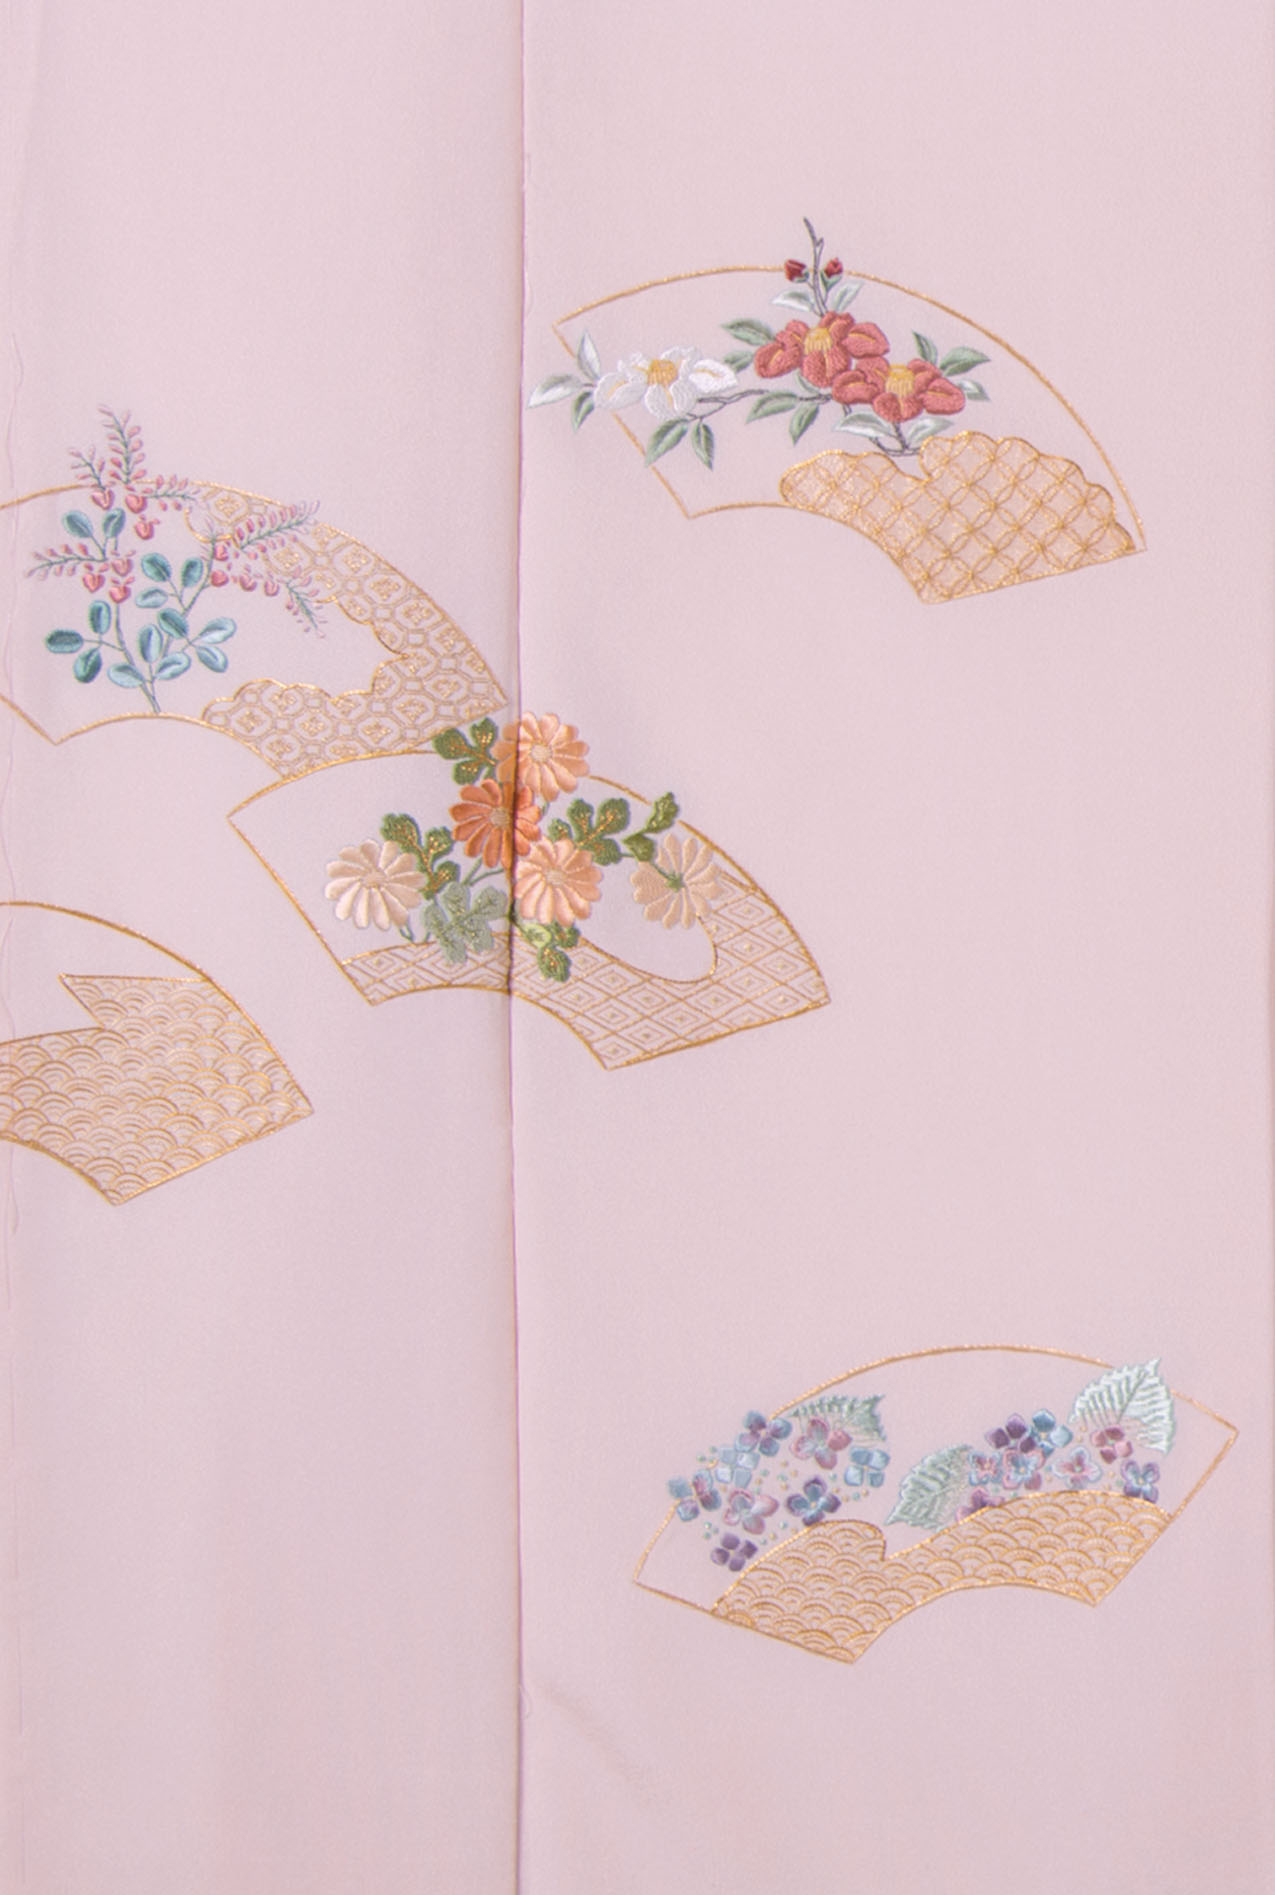 日本刺繍ギャラリー《研究コース作品》 || 日本刺繍 紅会(くれないかい)